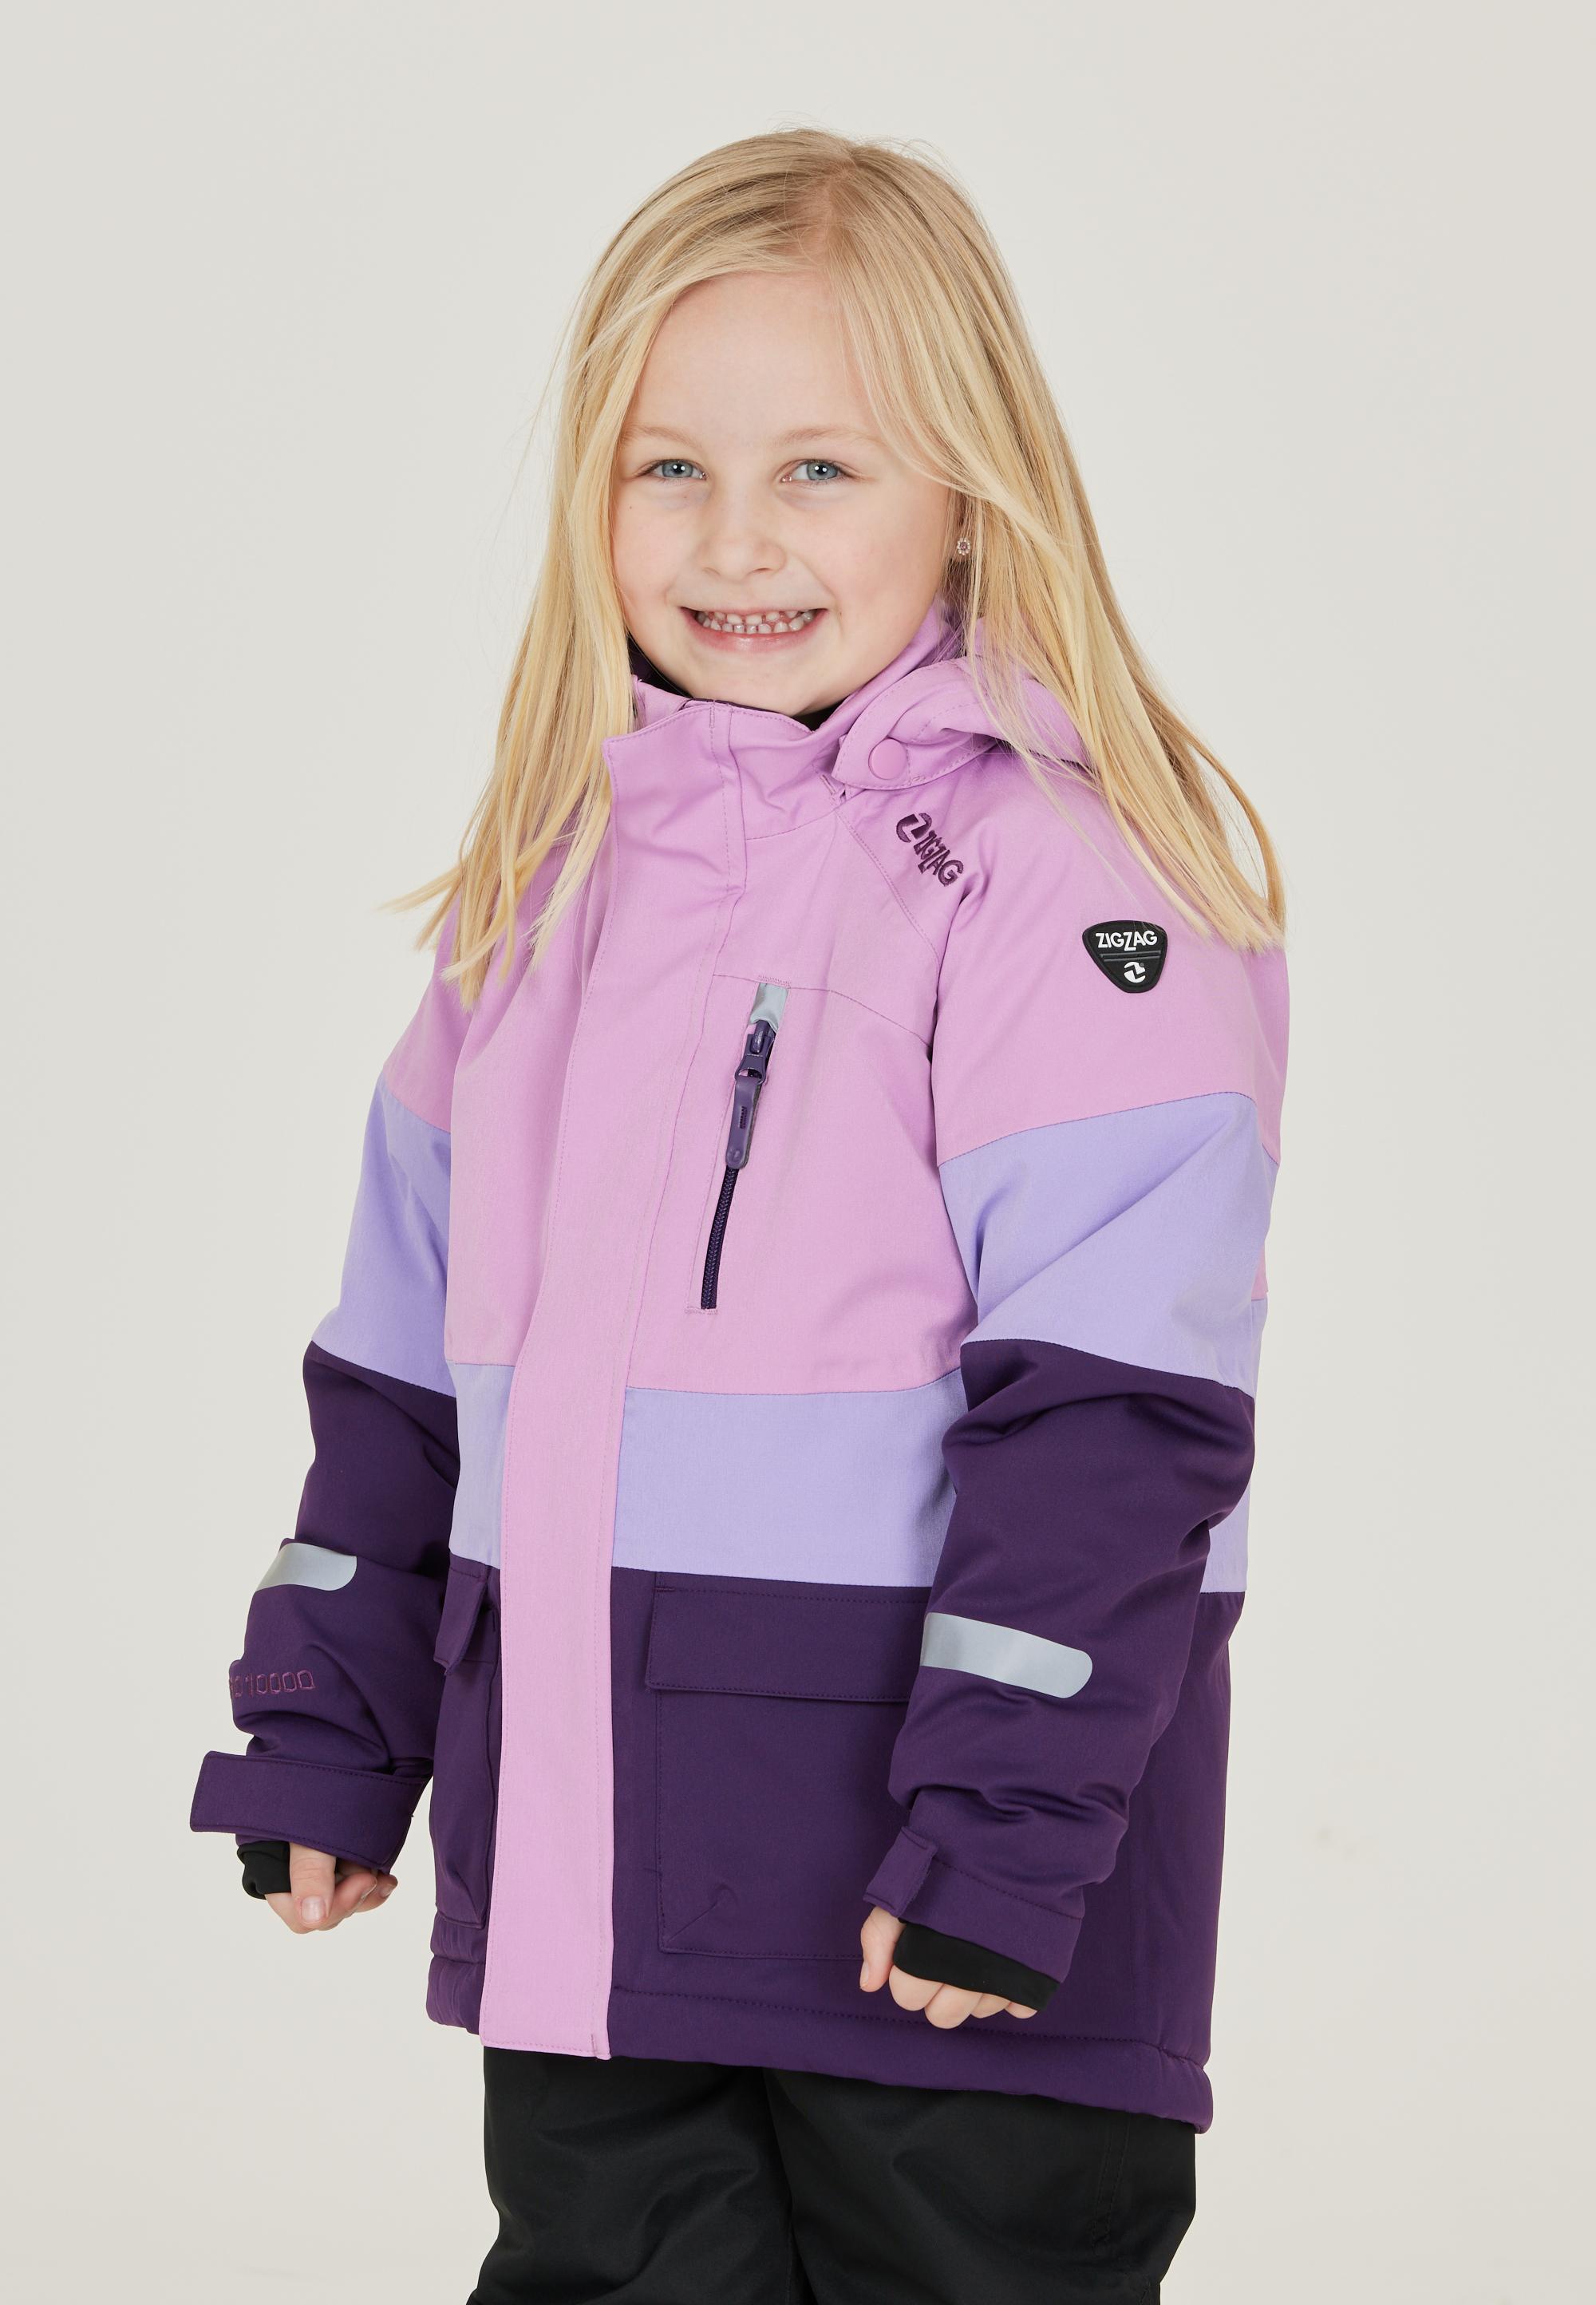 ZigZag Taylora Purple SportScheck Online 4149 Shop Skijacke Pennant von im kaufen Kinder